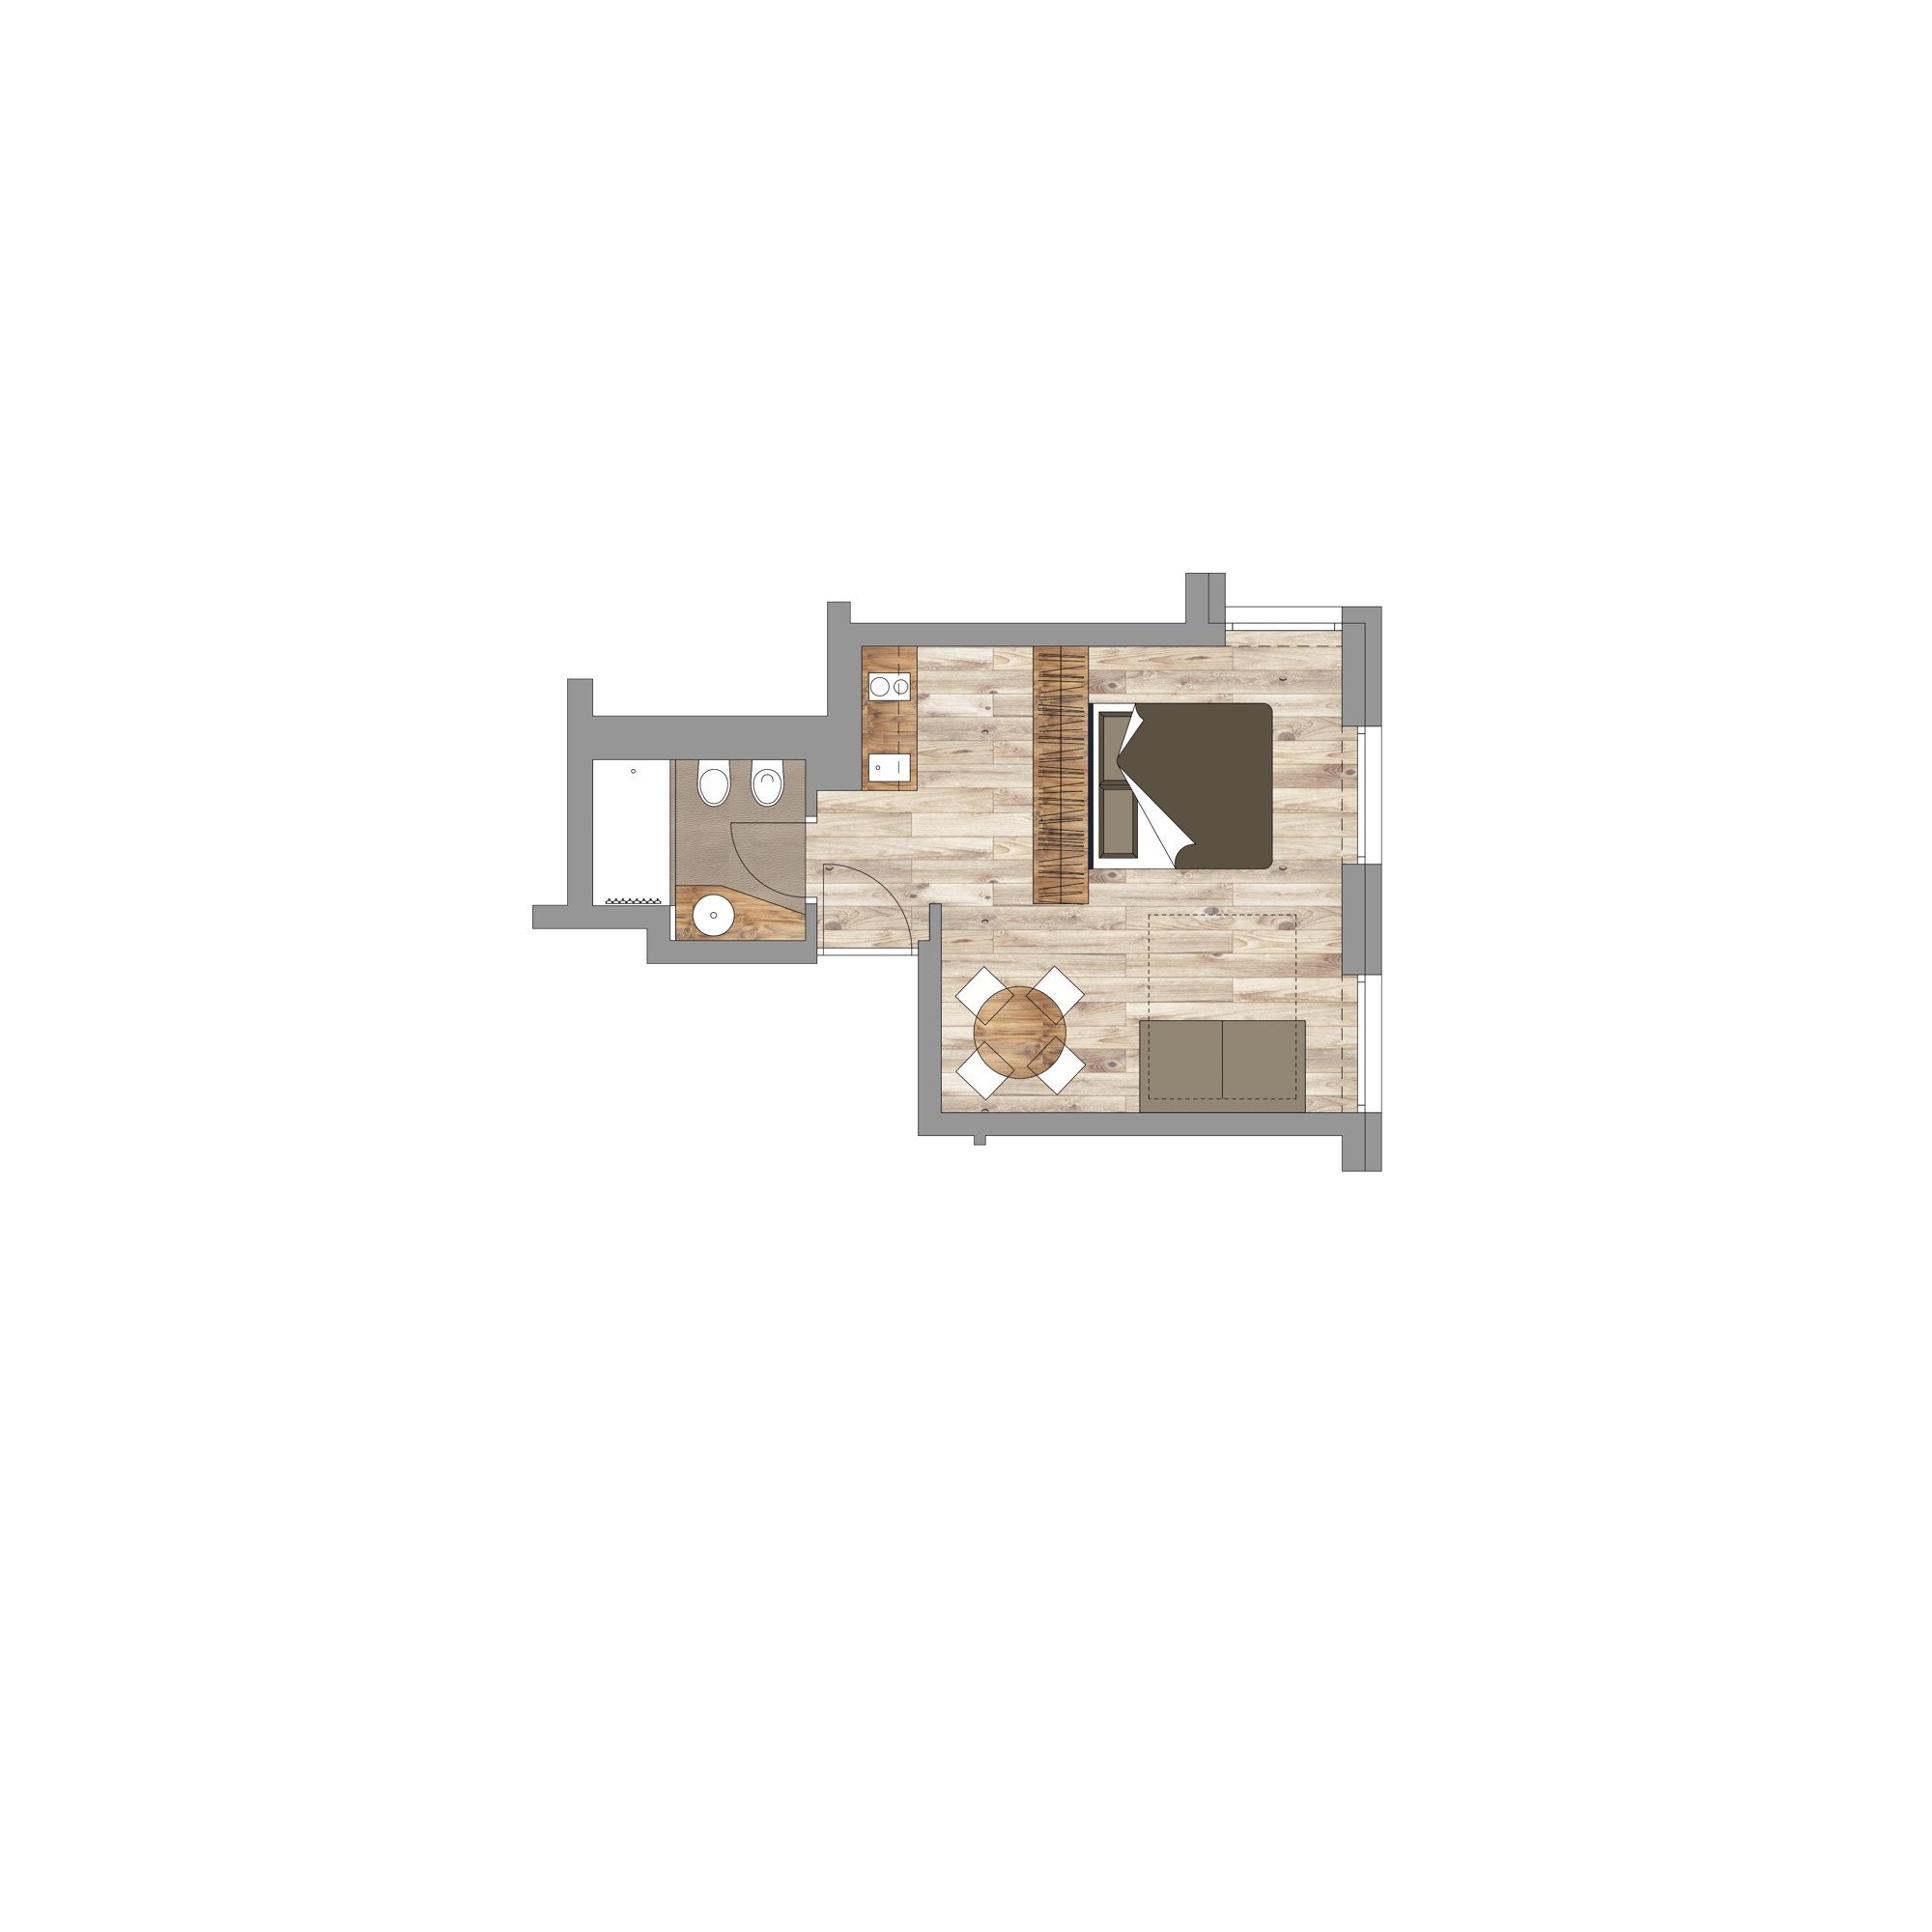 A2 - POST MOUNTAIN - Monolokal mit hochwertiger Ausstattung im 3. Obergeschoss